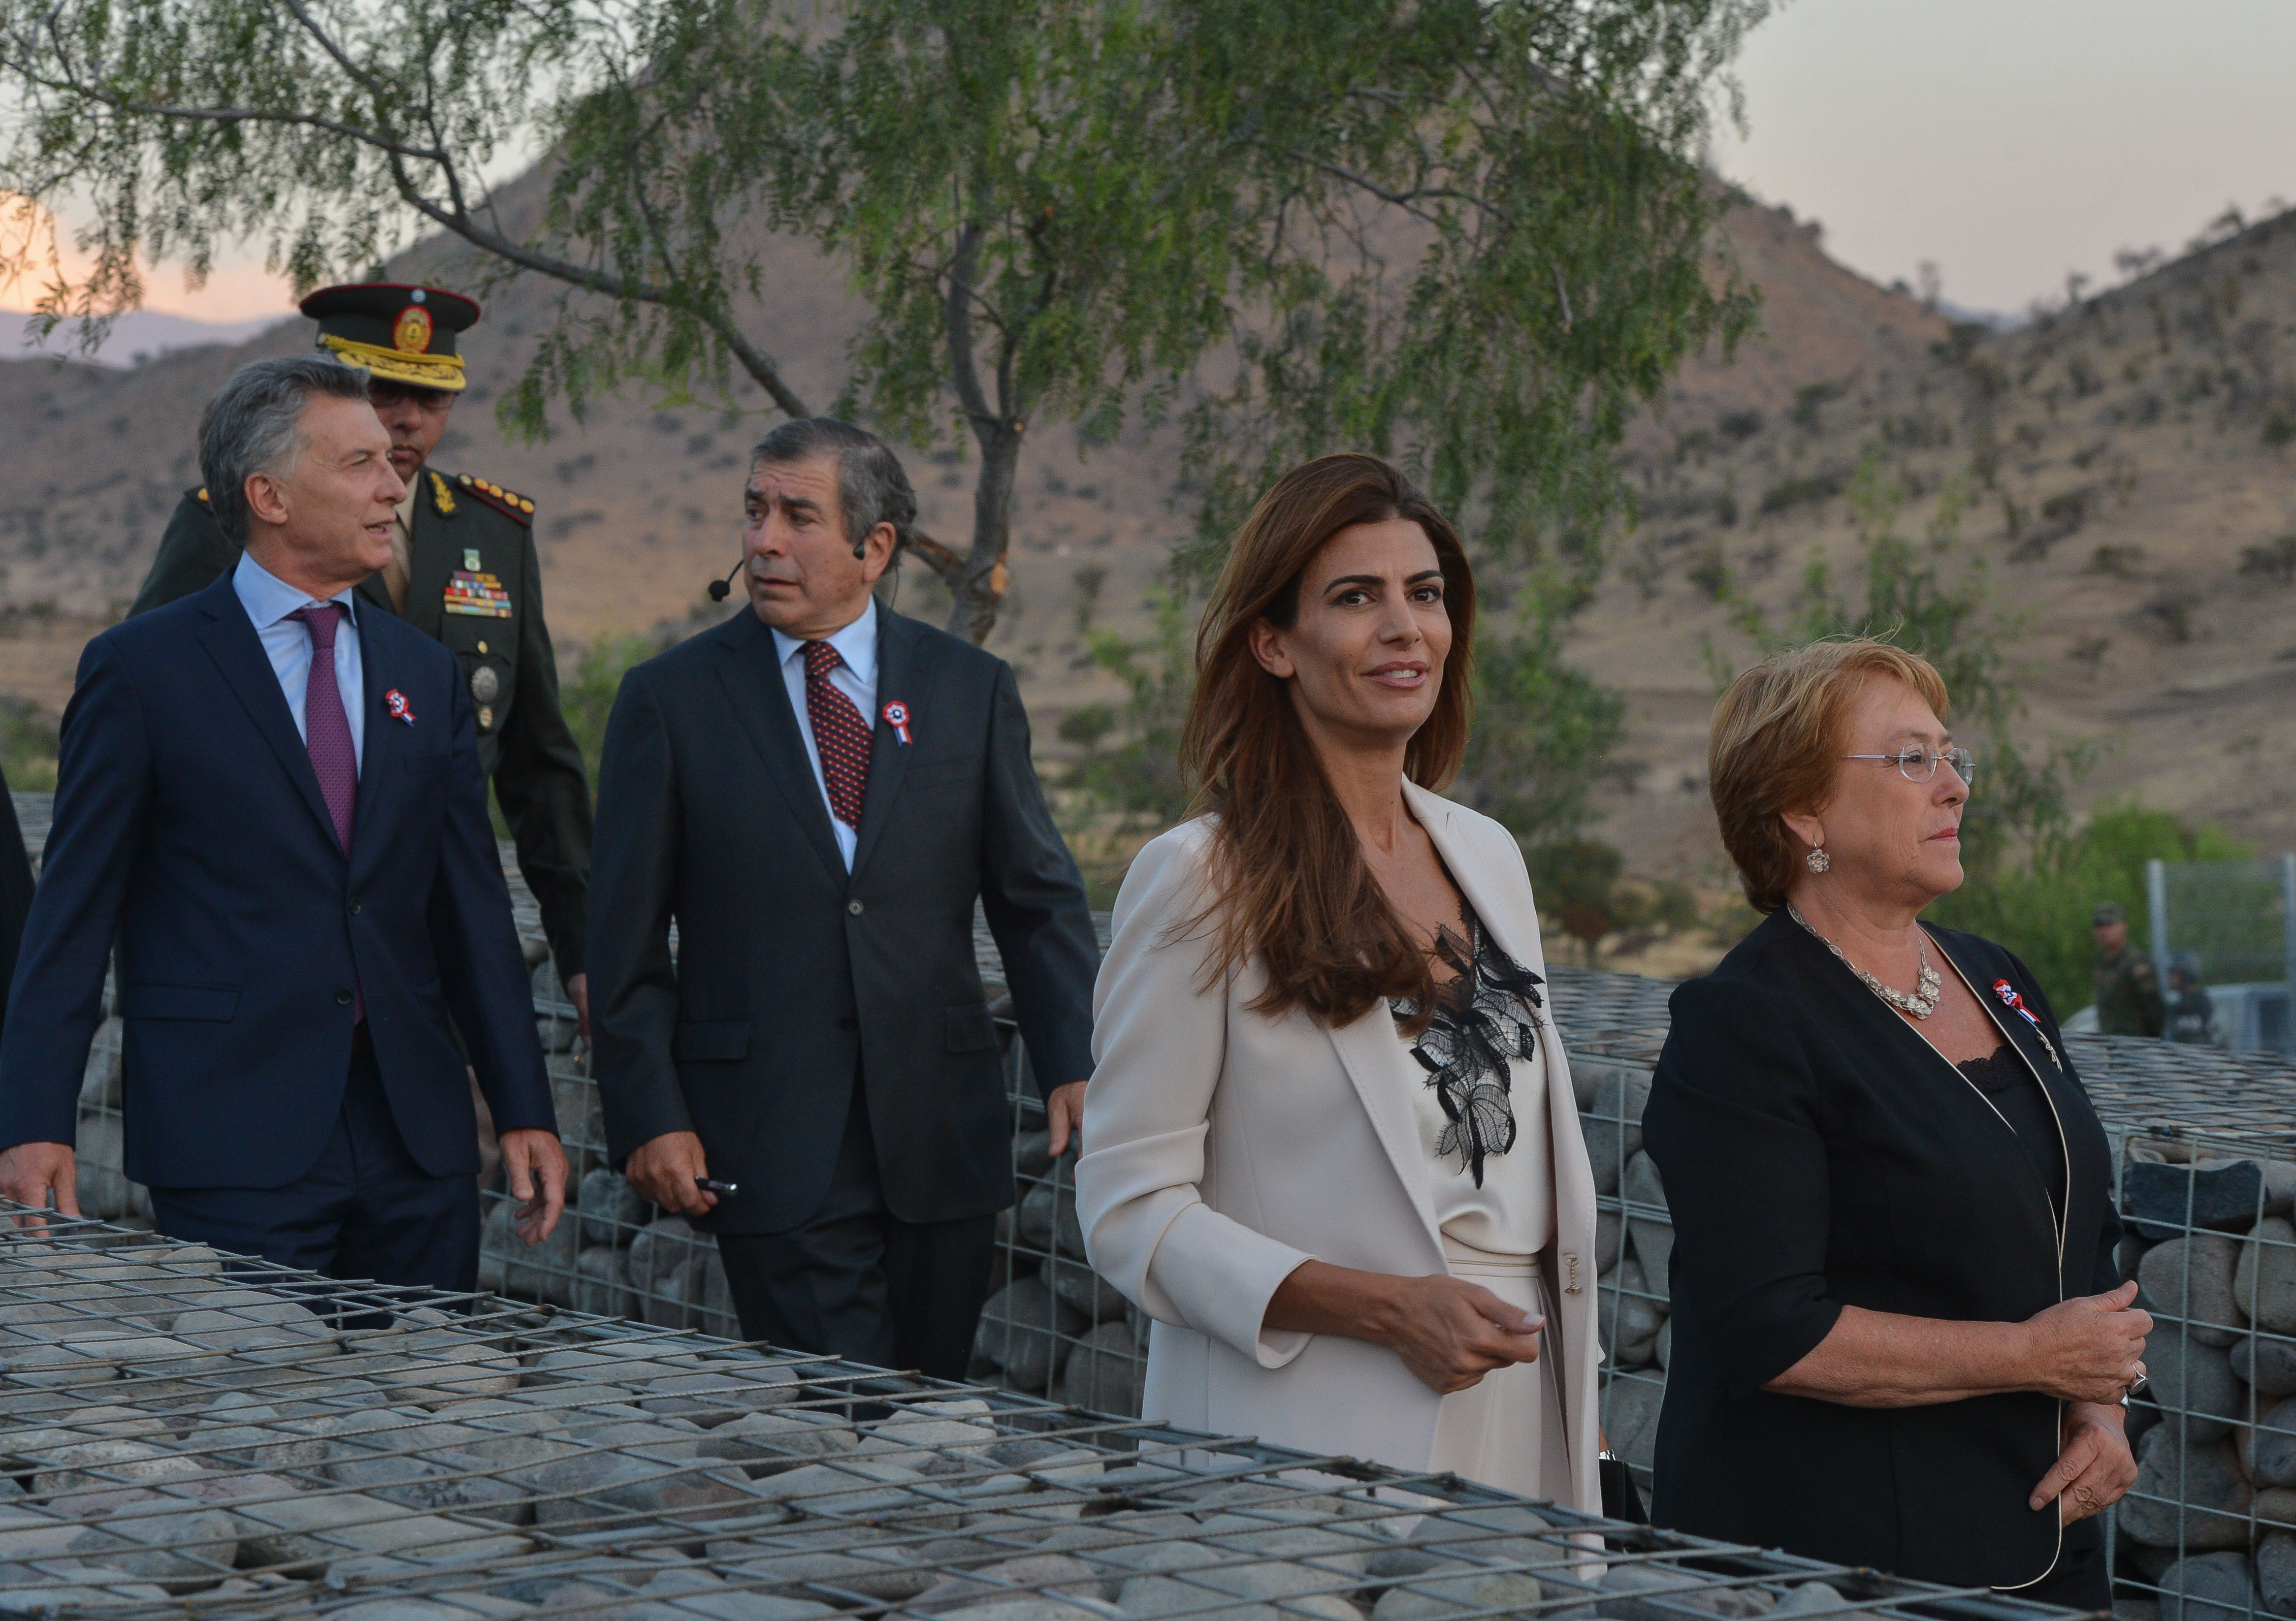 Macri y Bachelet, comprometidos con la integración del Mercosur y la Alianza del Pacífico